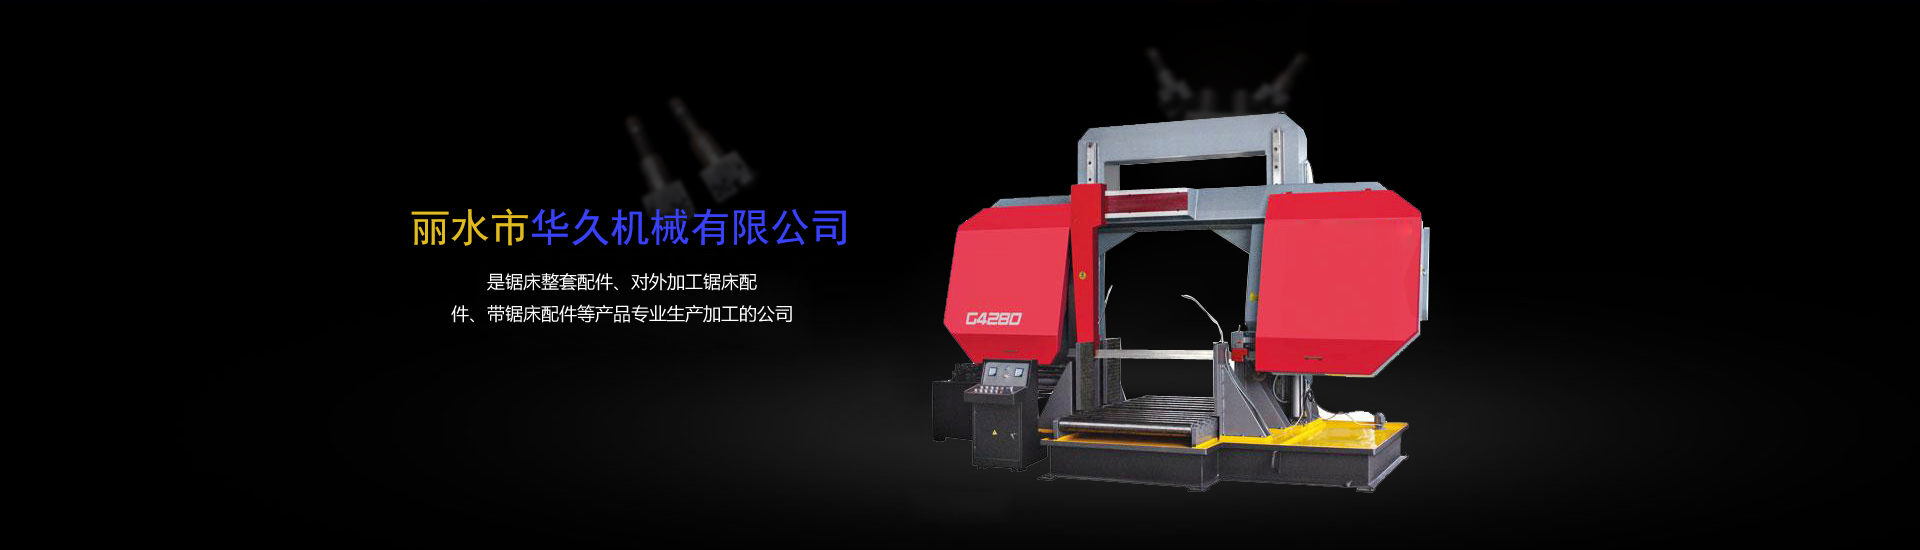 恒而达(300946SZ)：到现在公司已开宣布CNC全自动圆锯机等智能数控配备